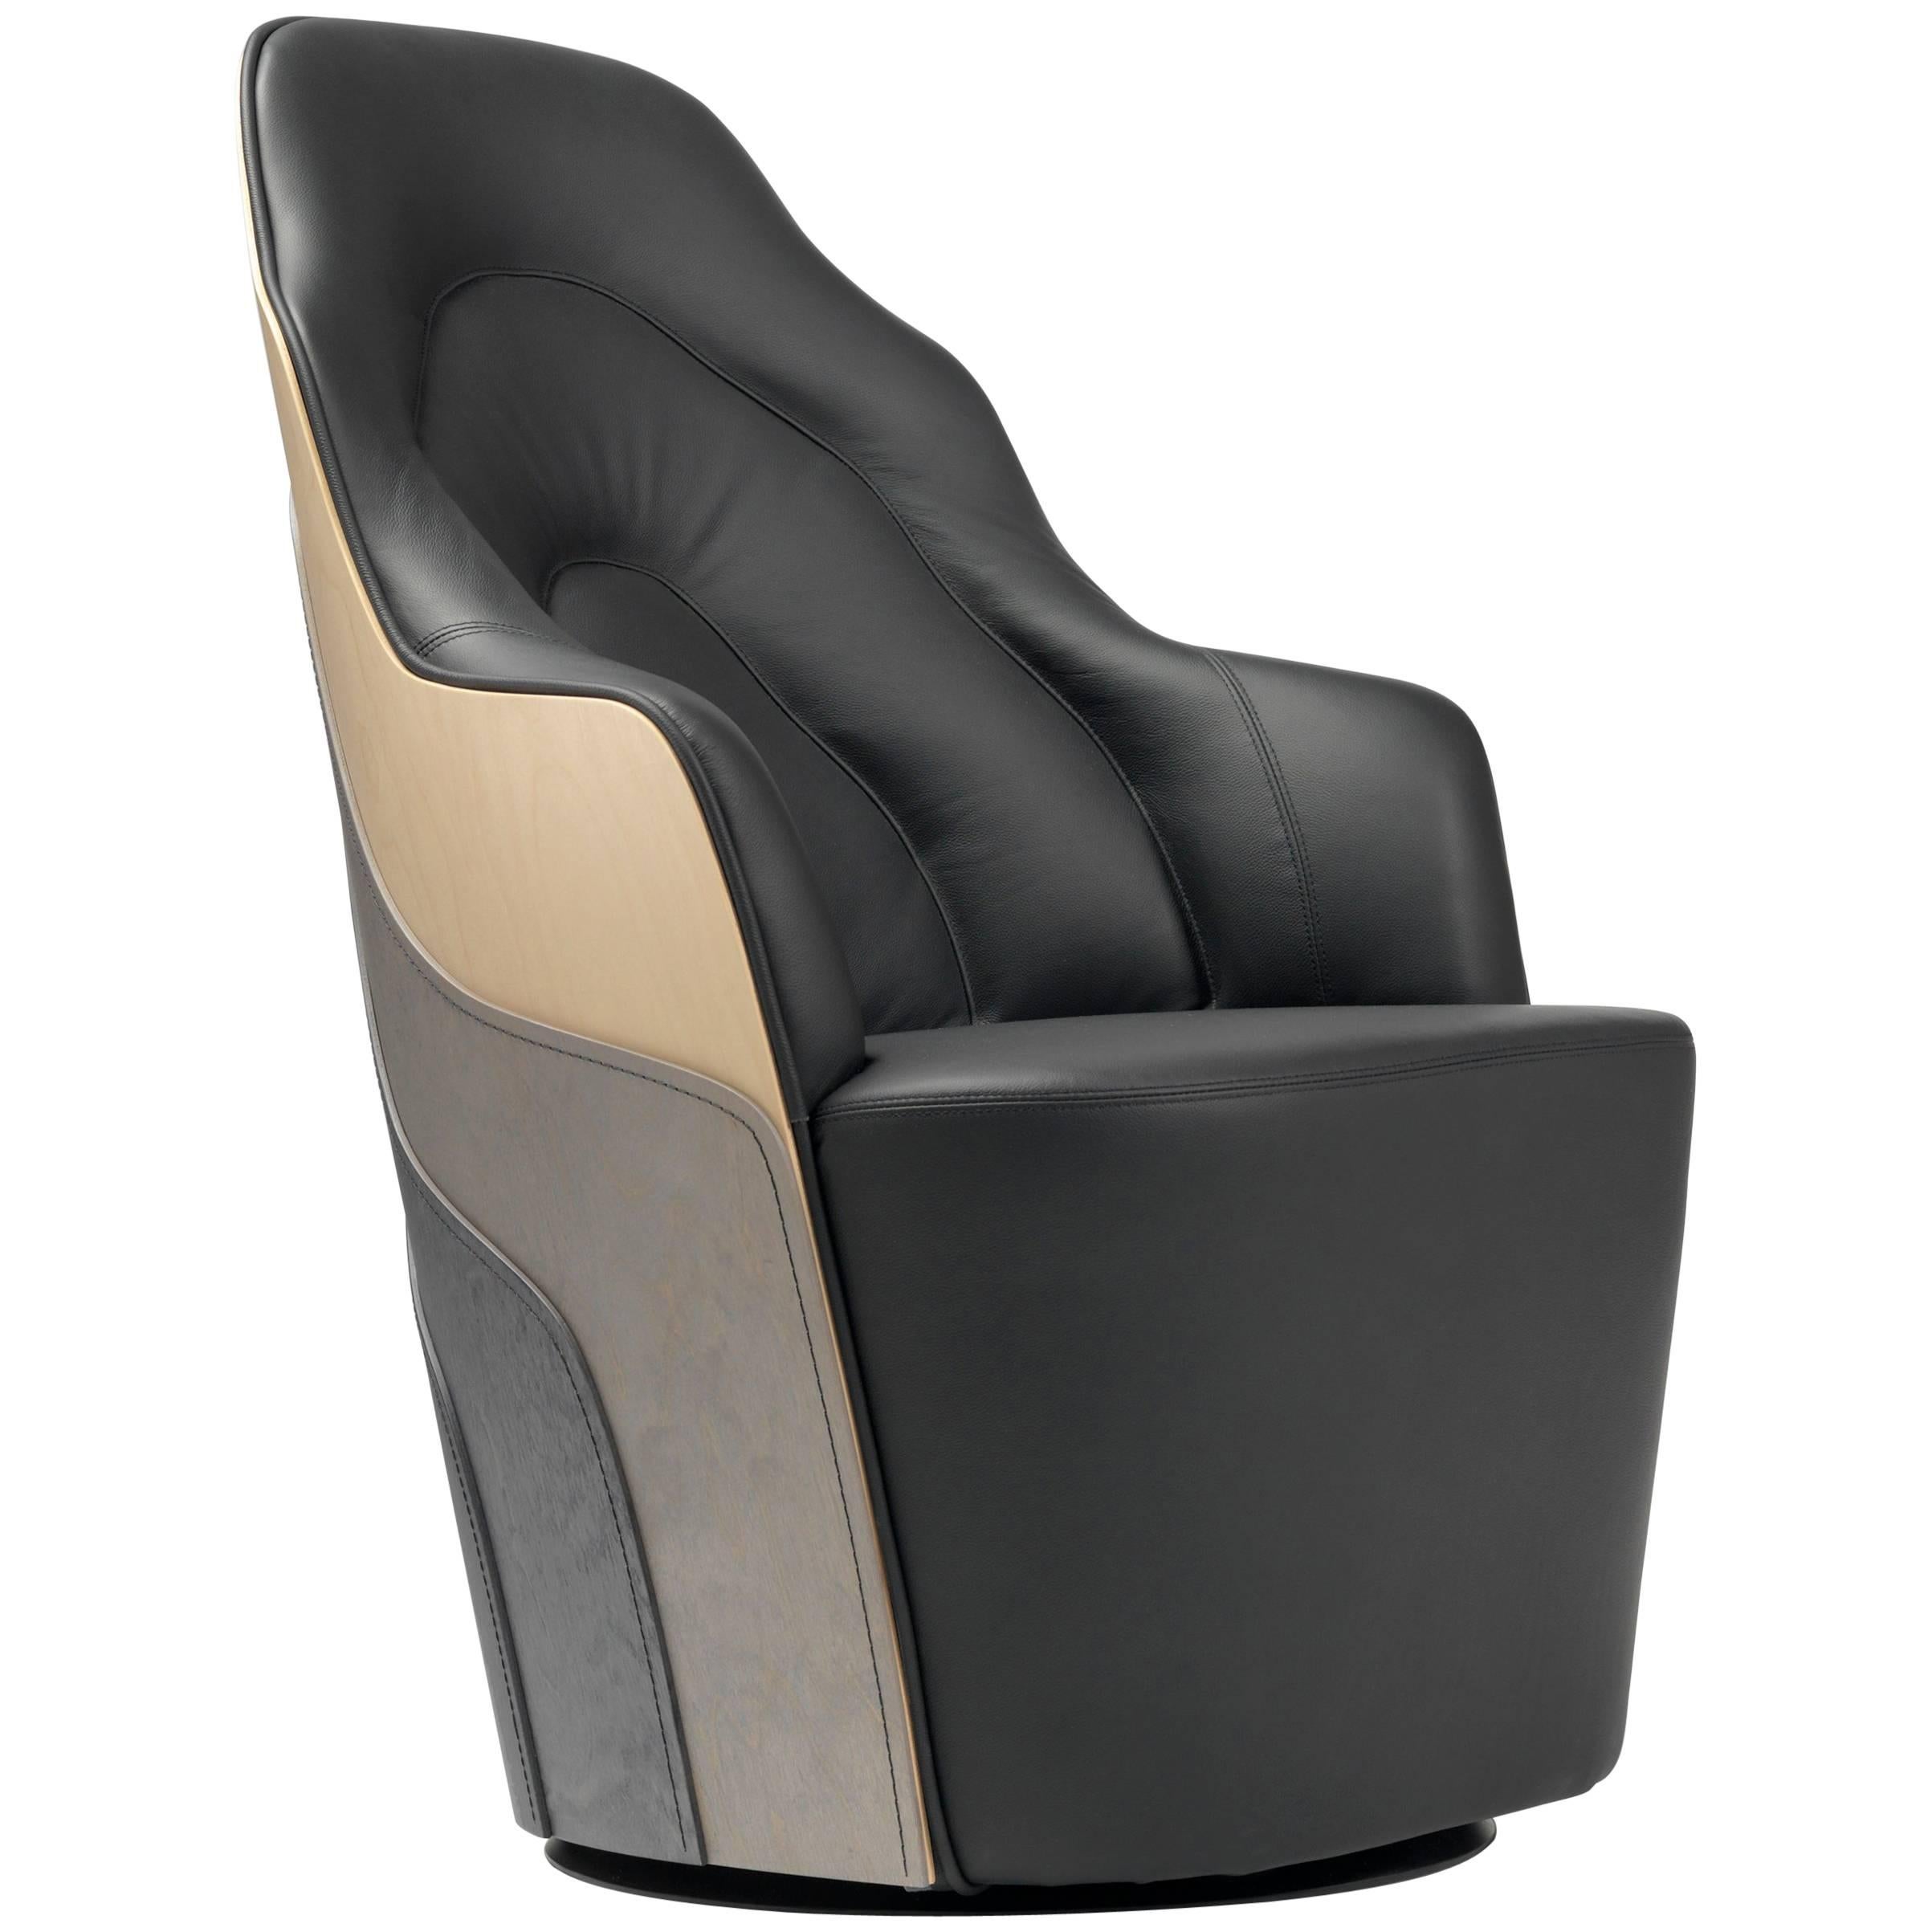  Couture-Sessel aus abgenutzter Birke mit schwarzer Lederrückenlehne  Gepolstert 